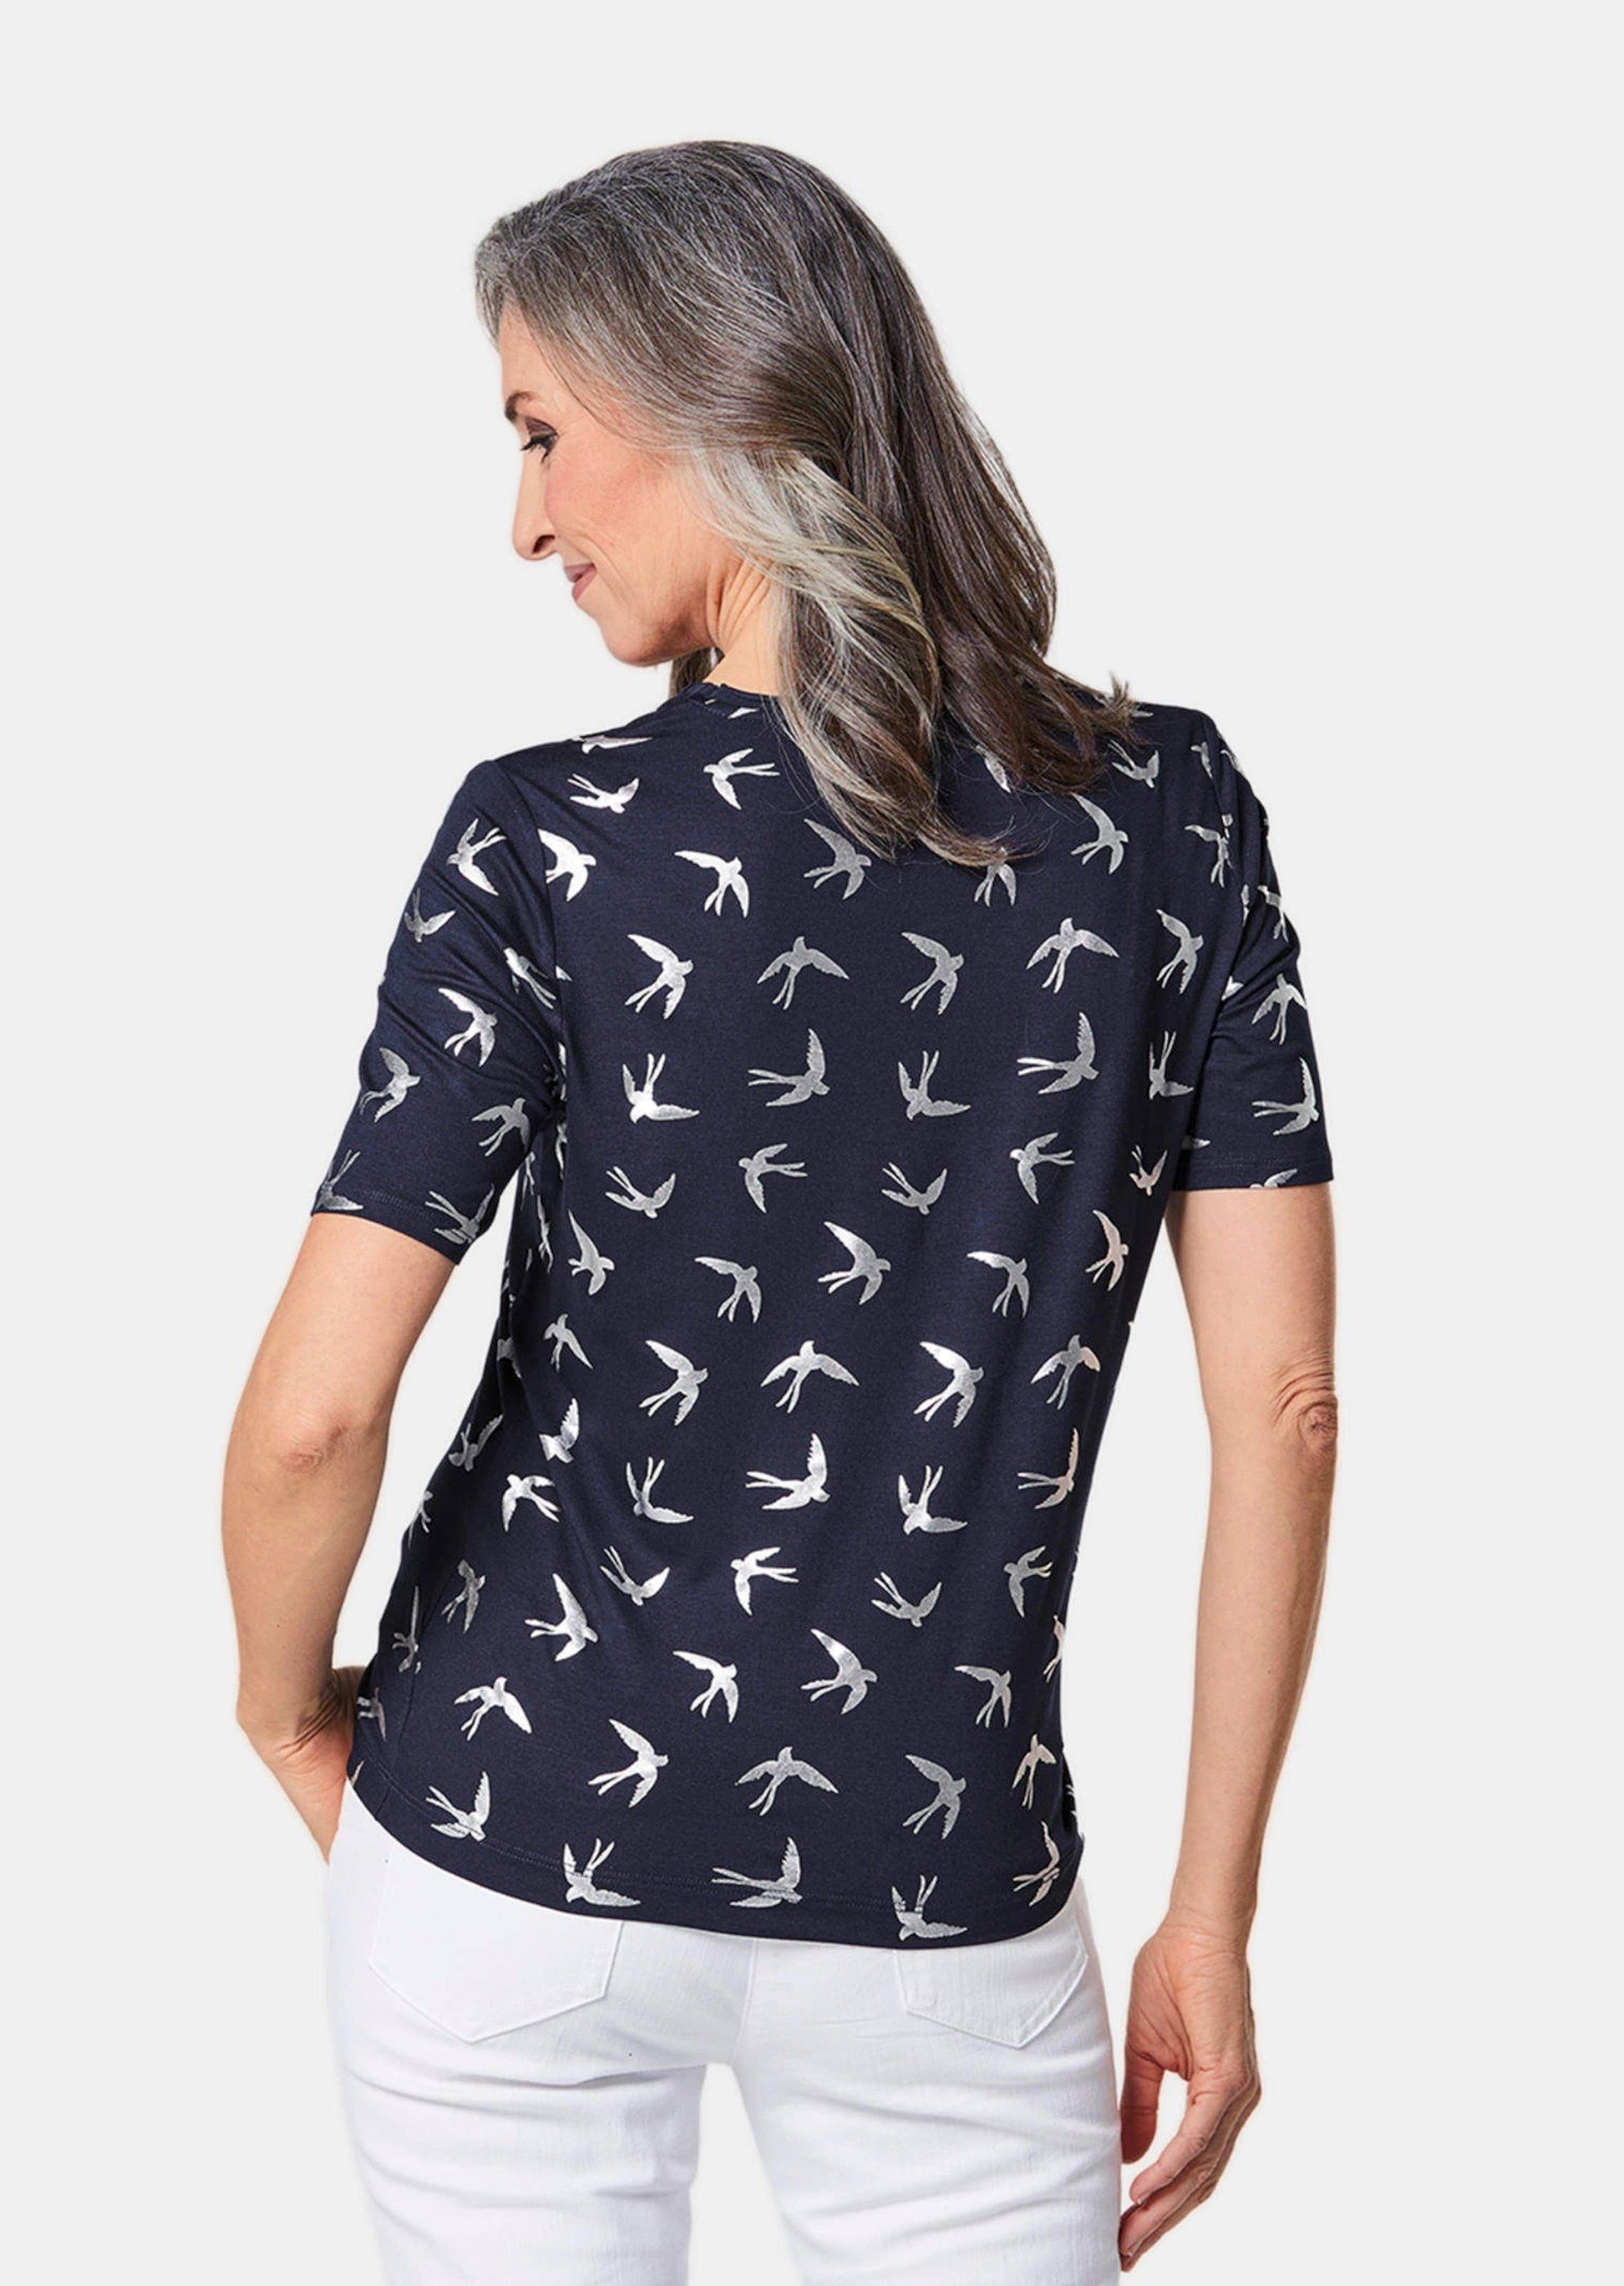 Topmodisches silber Druck Print-Shirt Shirt / mit GOLDNER marine glänzendem